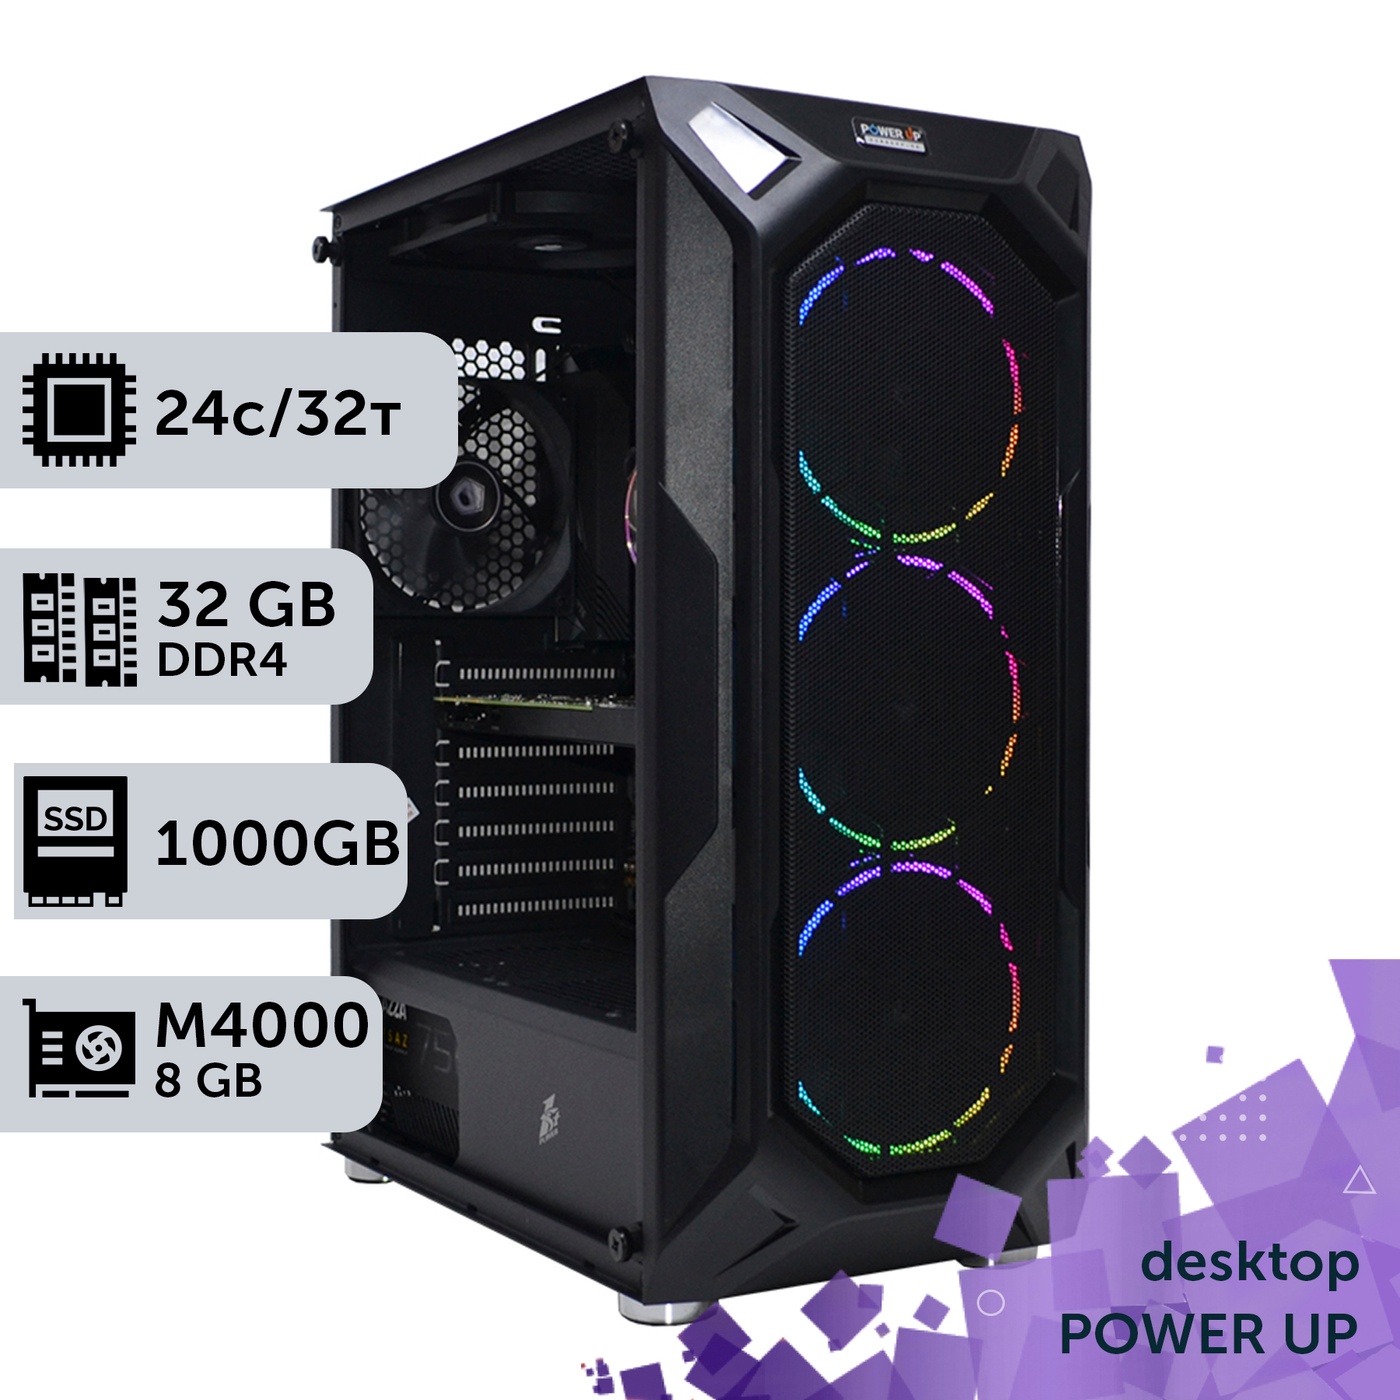 Робоча станція PowerUp Desktop #217 Core i7 13700K/32 GB/SSD 1TB/NVIDIA Quadro M4000 8GB